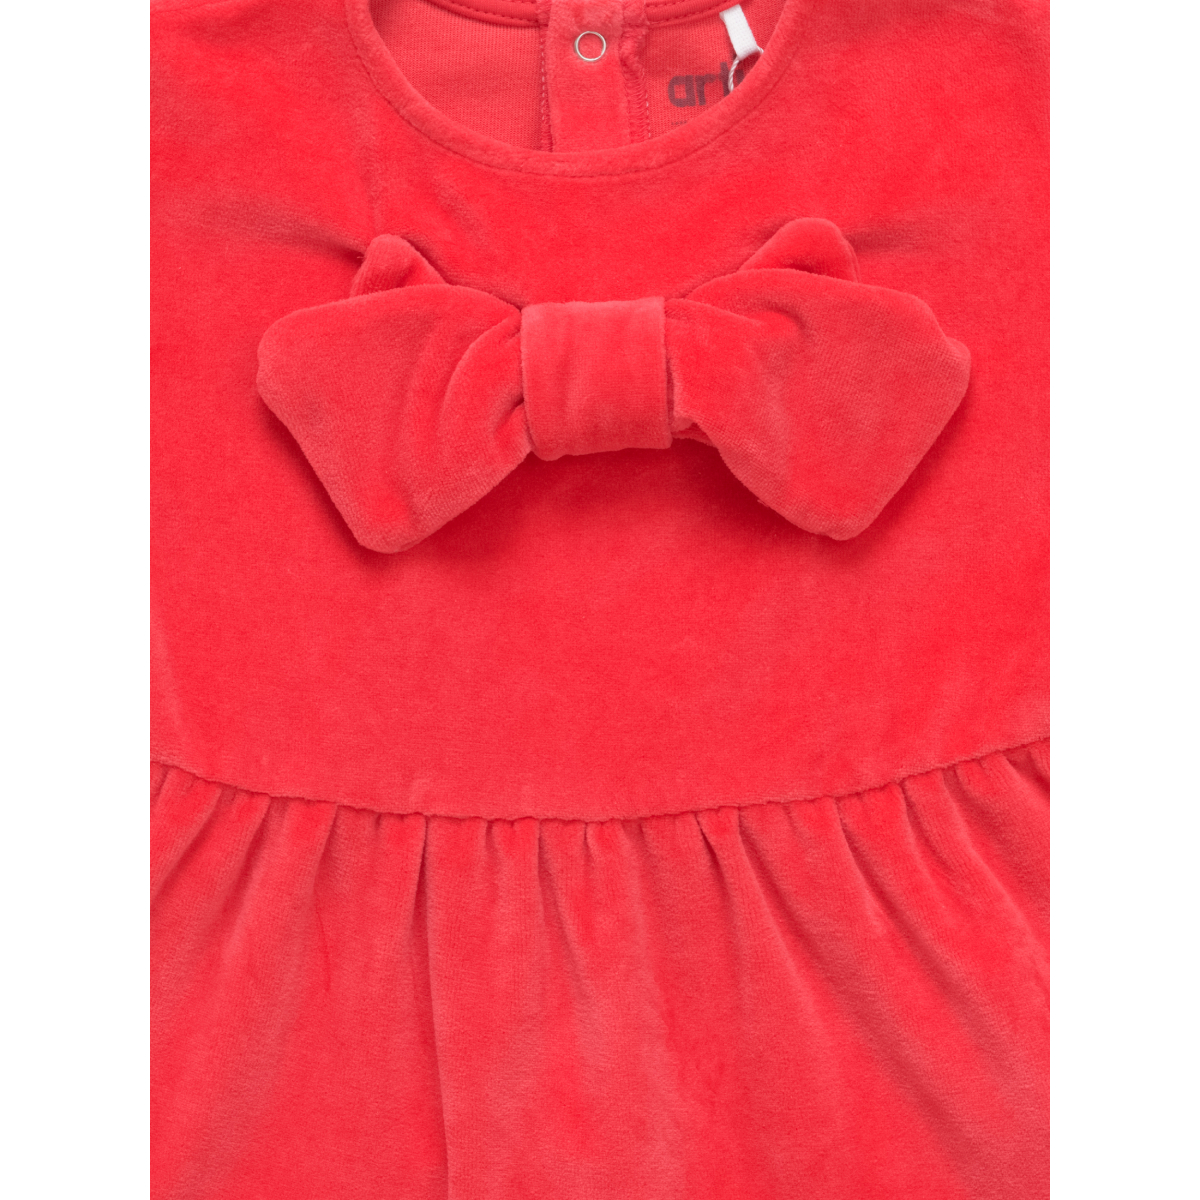 Платье Artie AKt2-907dn красный - фото 4